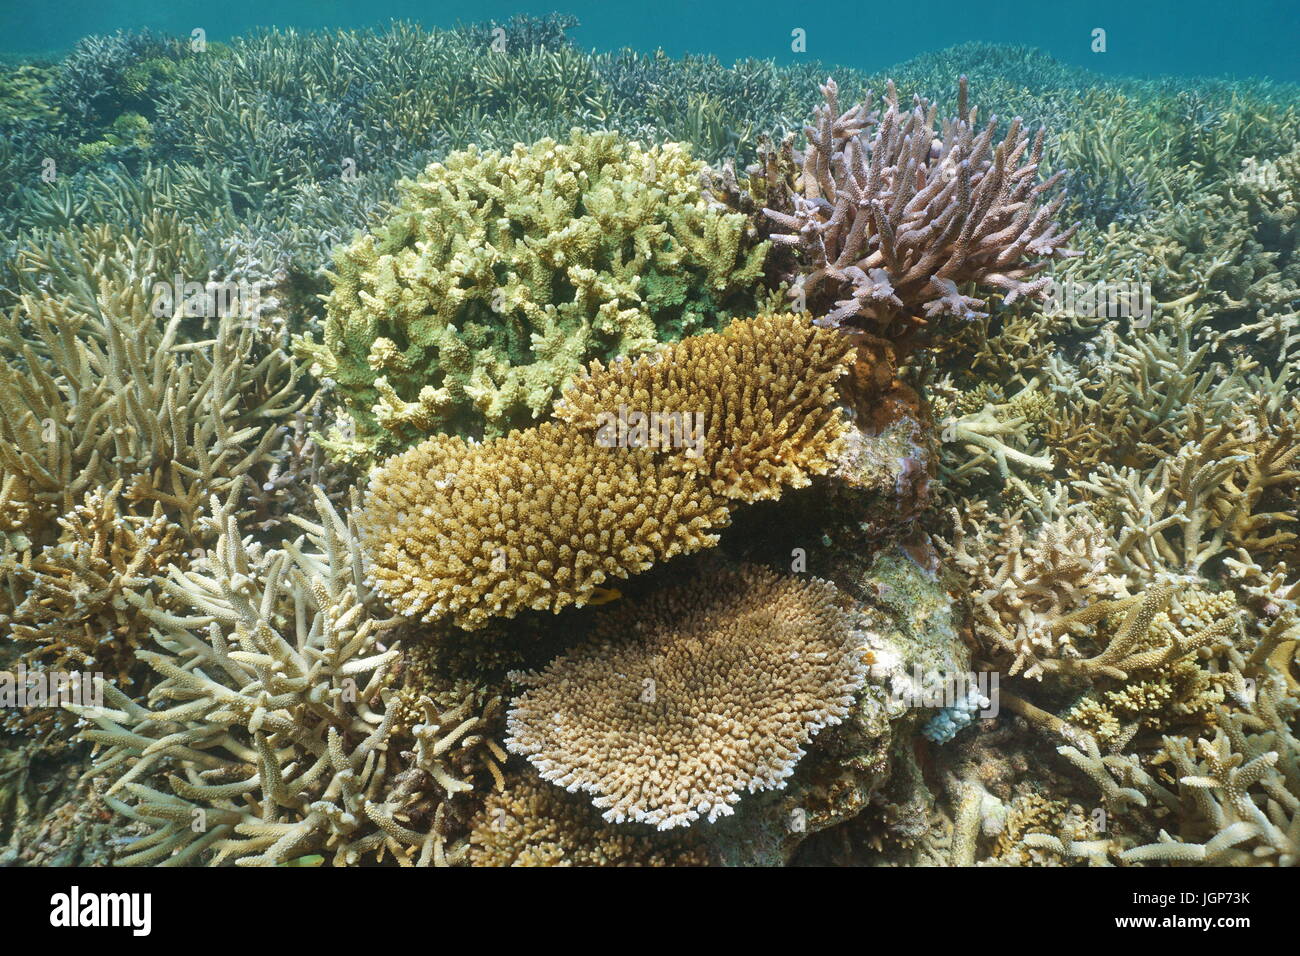 Coralli underwater su una scogliera di sano nella laguna del Grande Terre isola, oceano pacifico del sud, Nuova Caledonia, Oceania Foto Stock